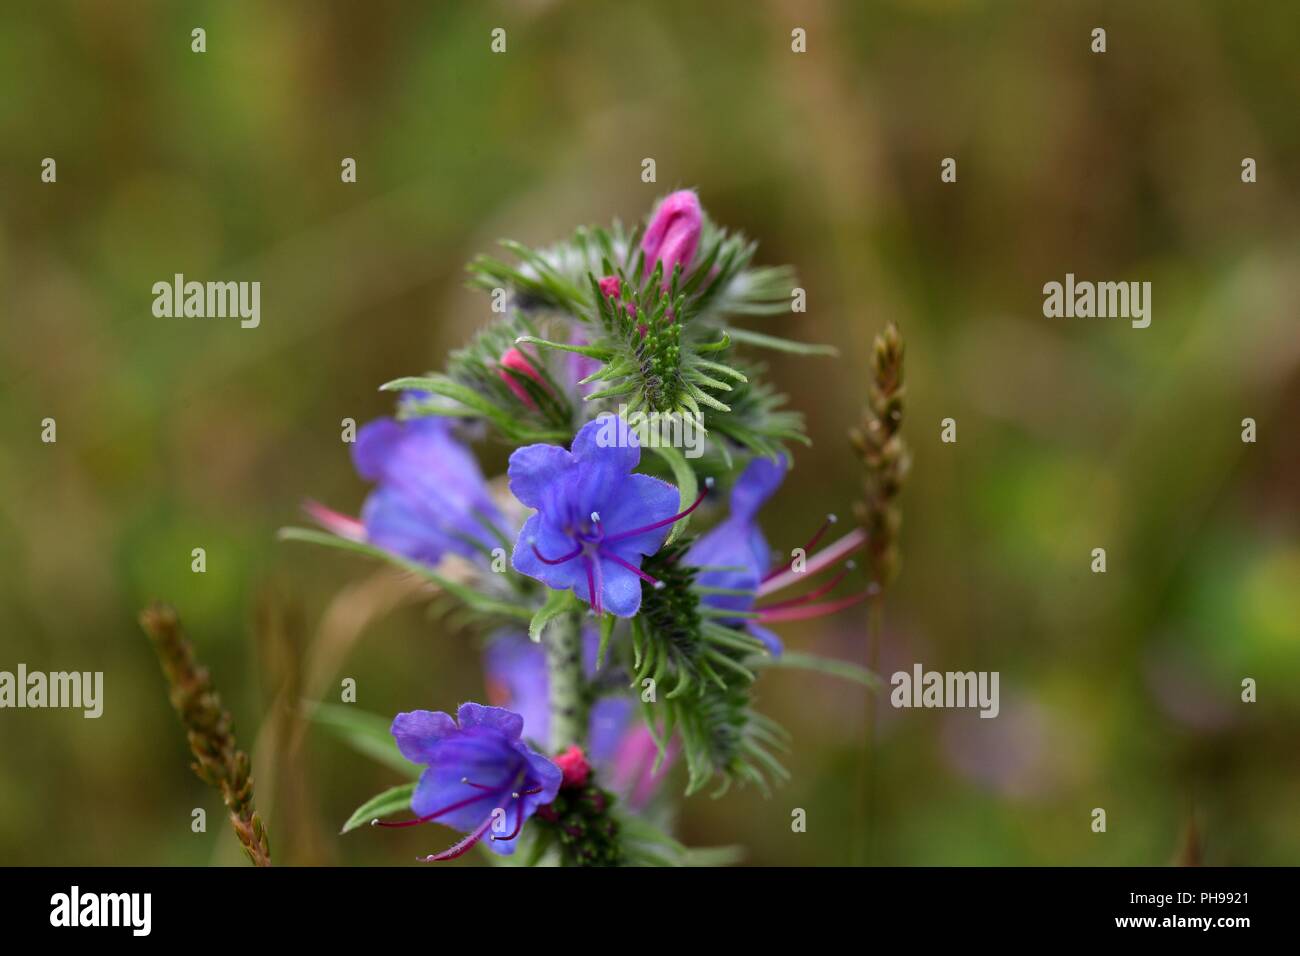 Blueweed or viper bugloss (Echium vulgare) Stock Photo